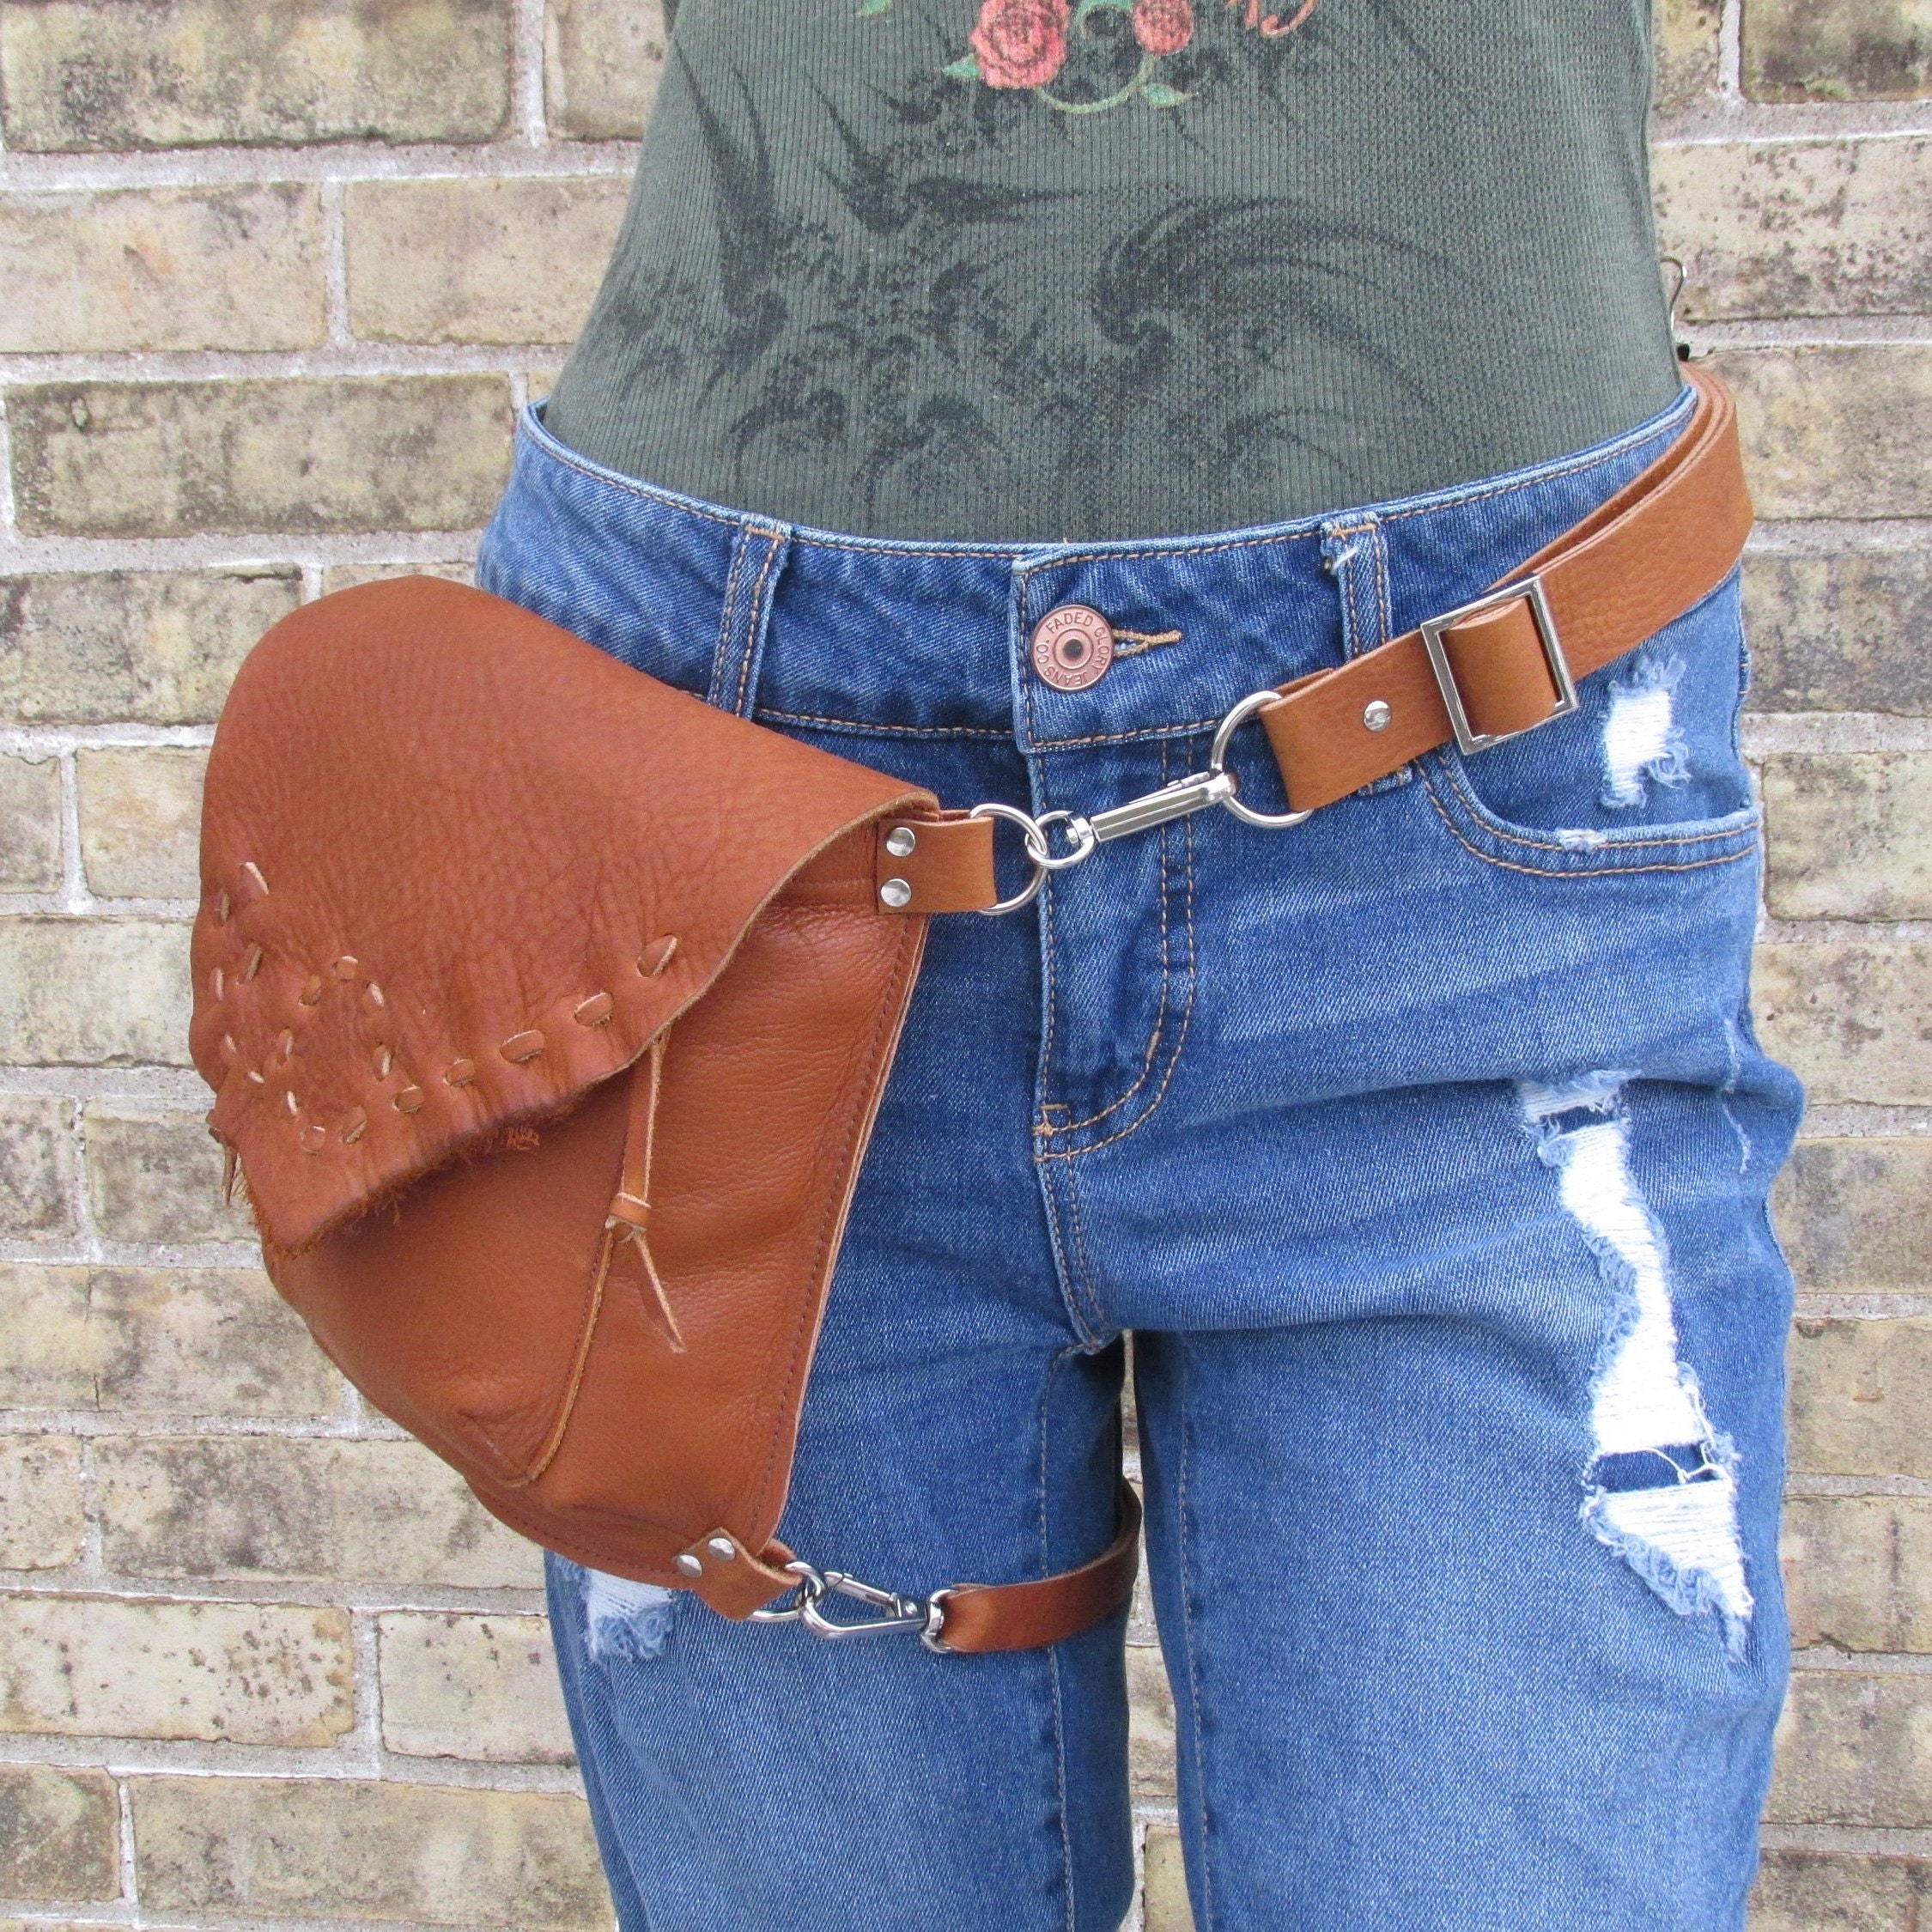 Brown Leather Belt Bag with leg strap belt loop bag clip on | Etsy